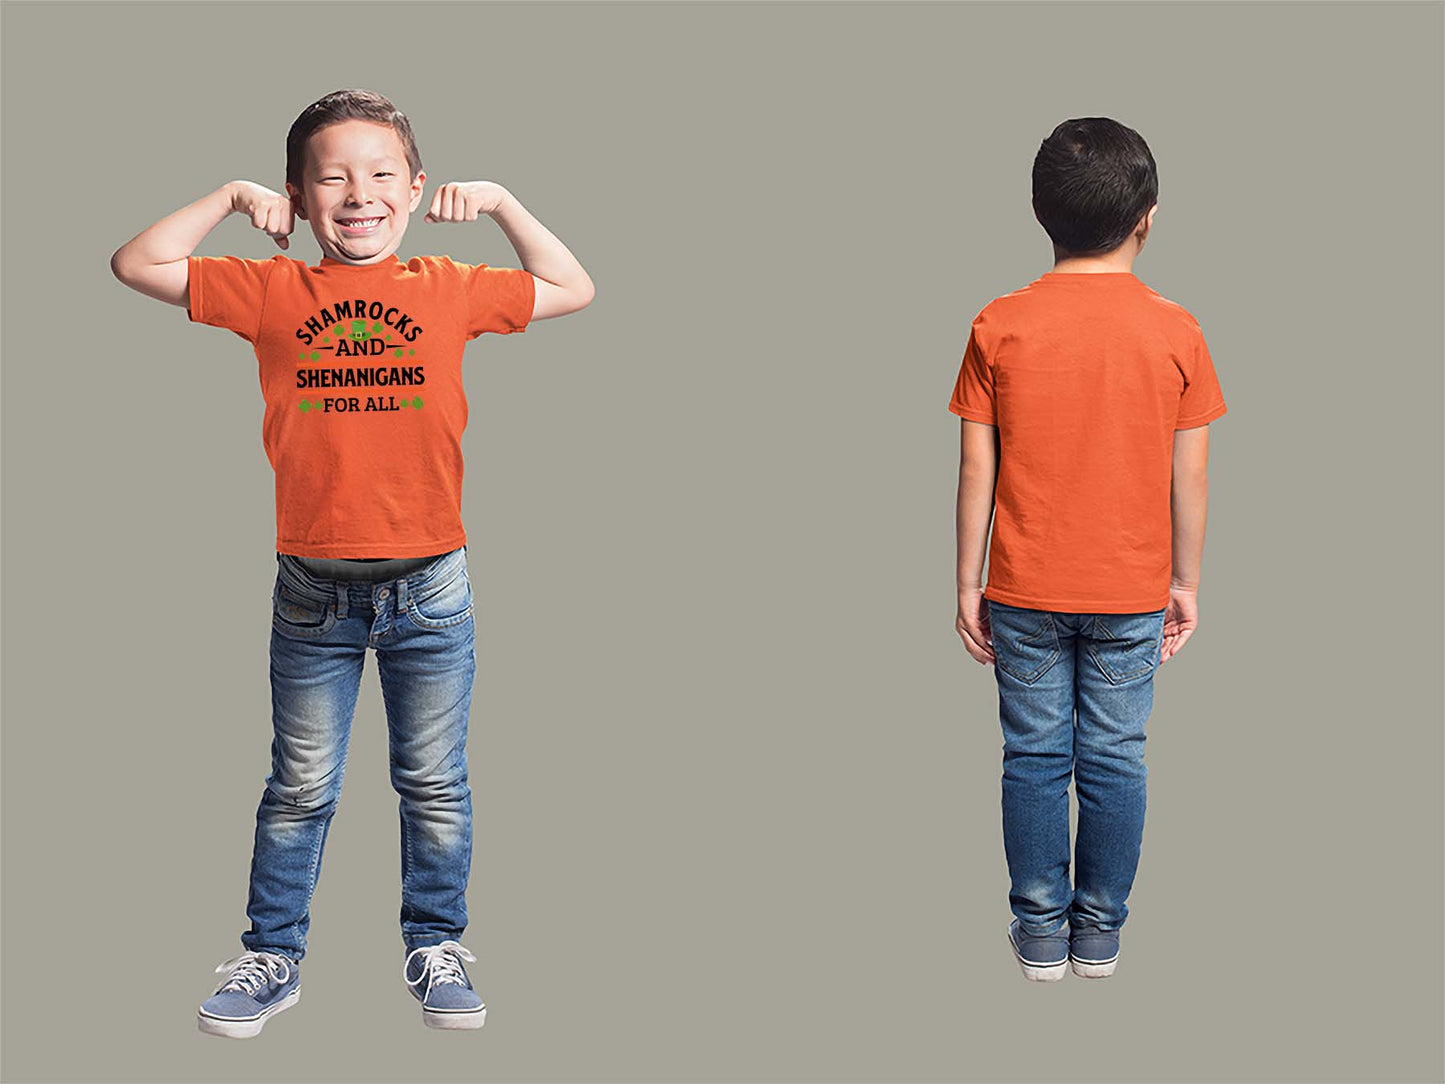 Shamrocks and Shenanigans Youth T-Shirt Youth Small Orange